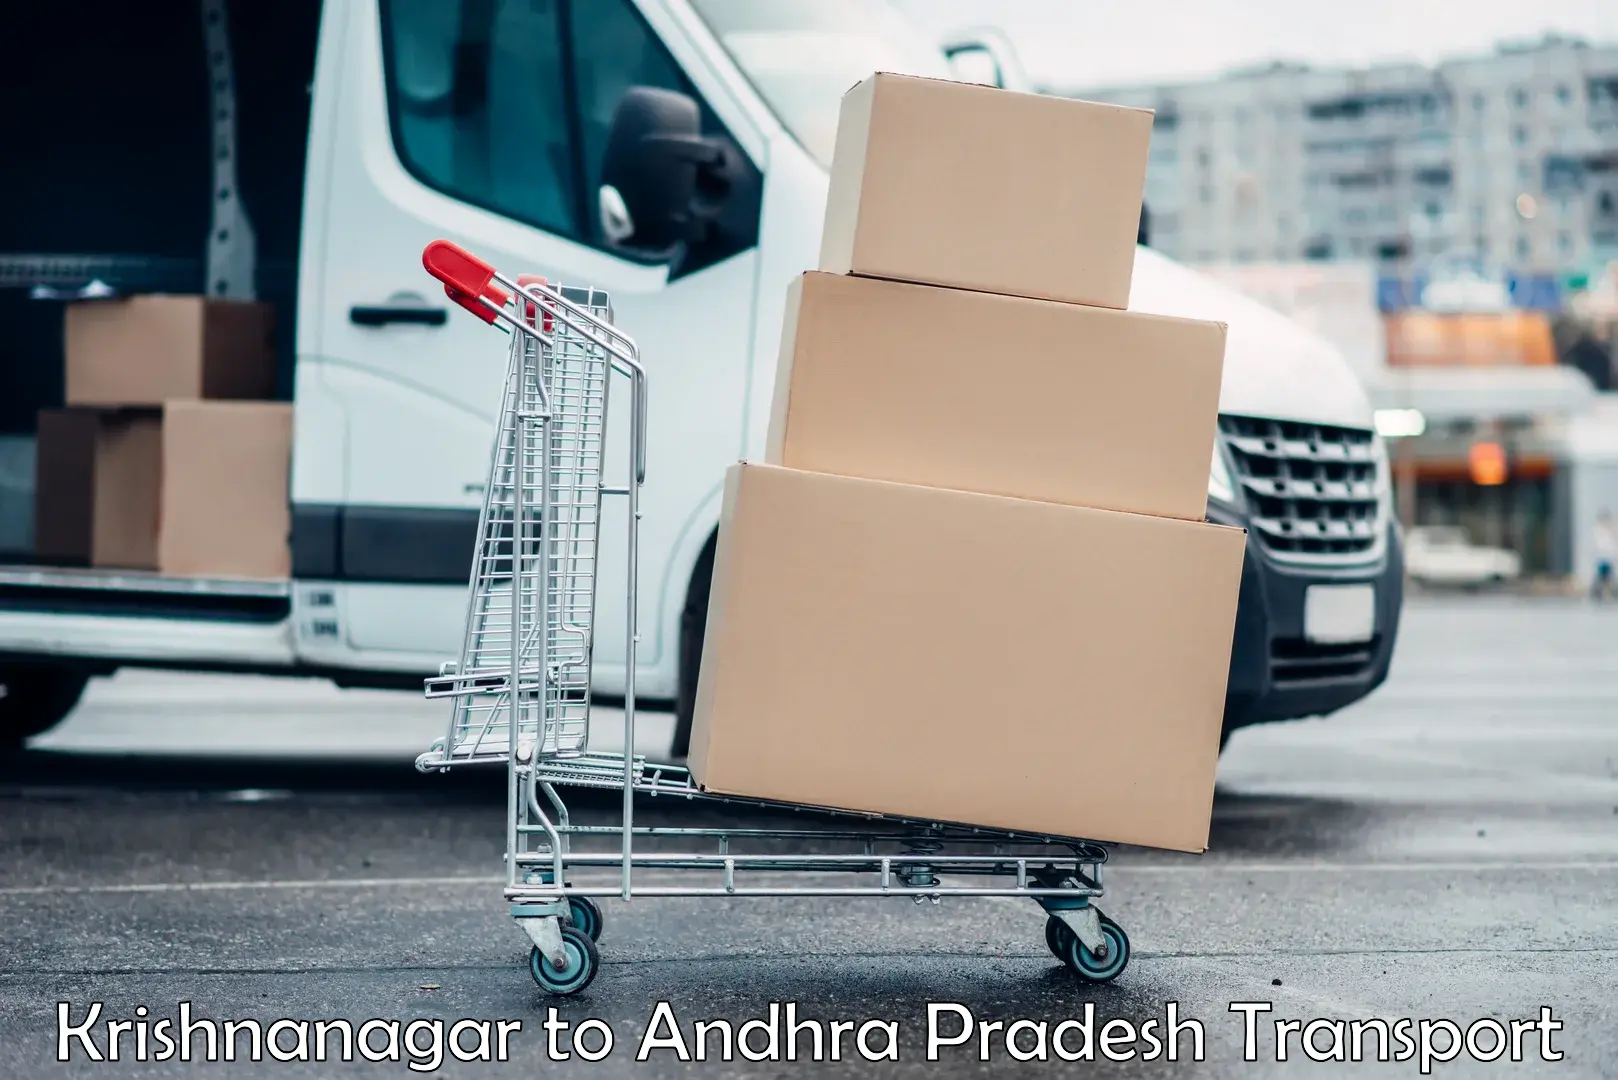 Shipping partner Krishnanagar to Gorantla